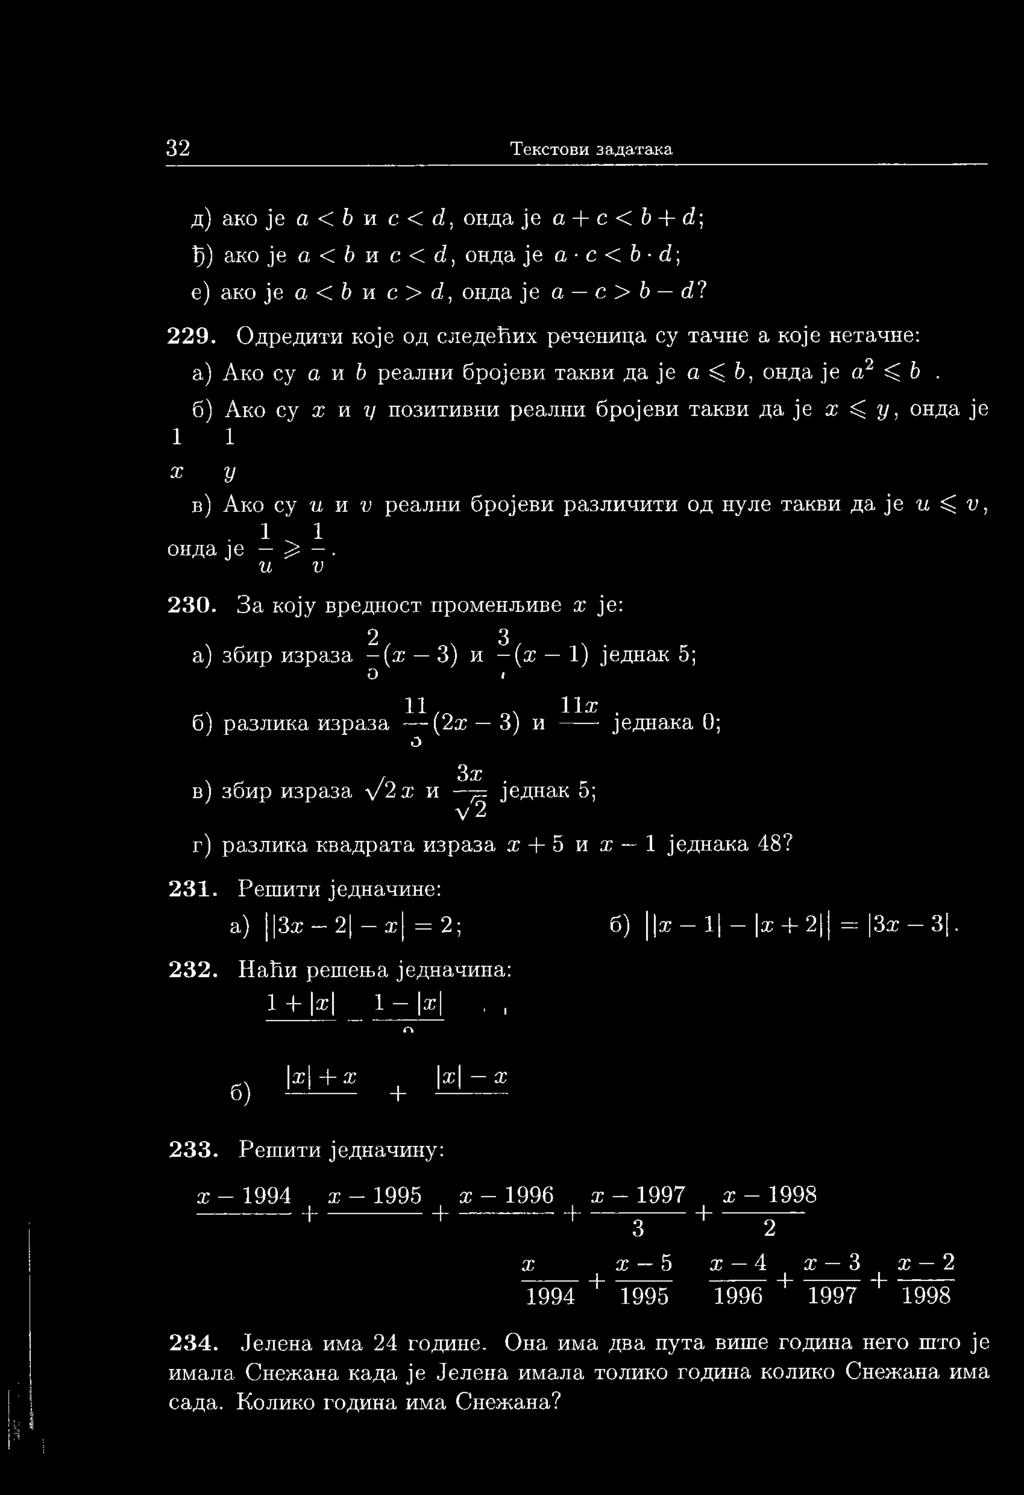 Ако су х и г/ позитивни реални бројеви такви да је х < у, онда је 1 1 X у в) Ако су и и V реални бројеви различити од нуле такви да је и ^ V, 1 1 онда је Џ. и V 230.